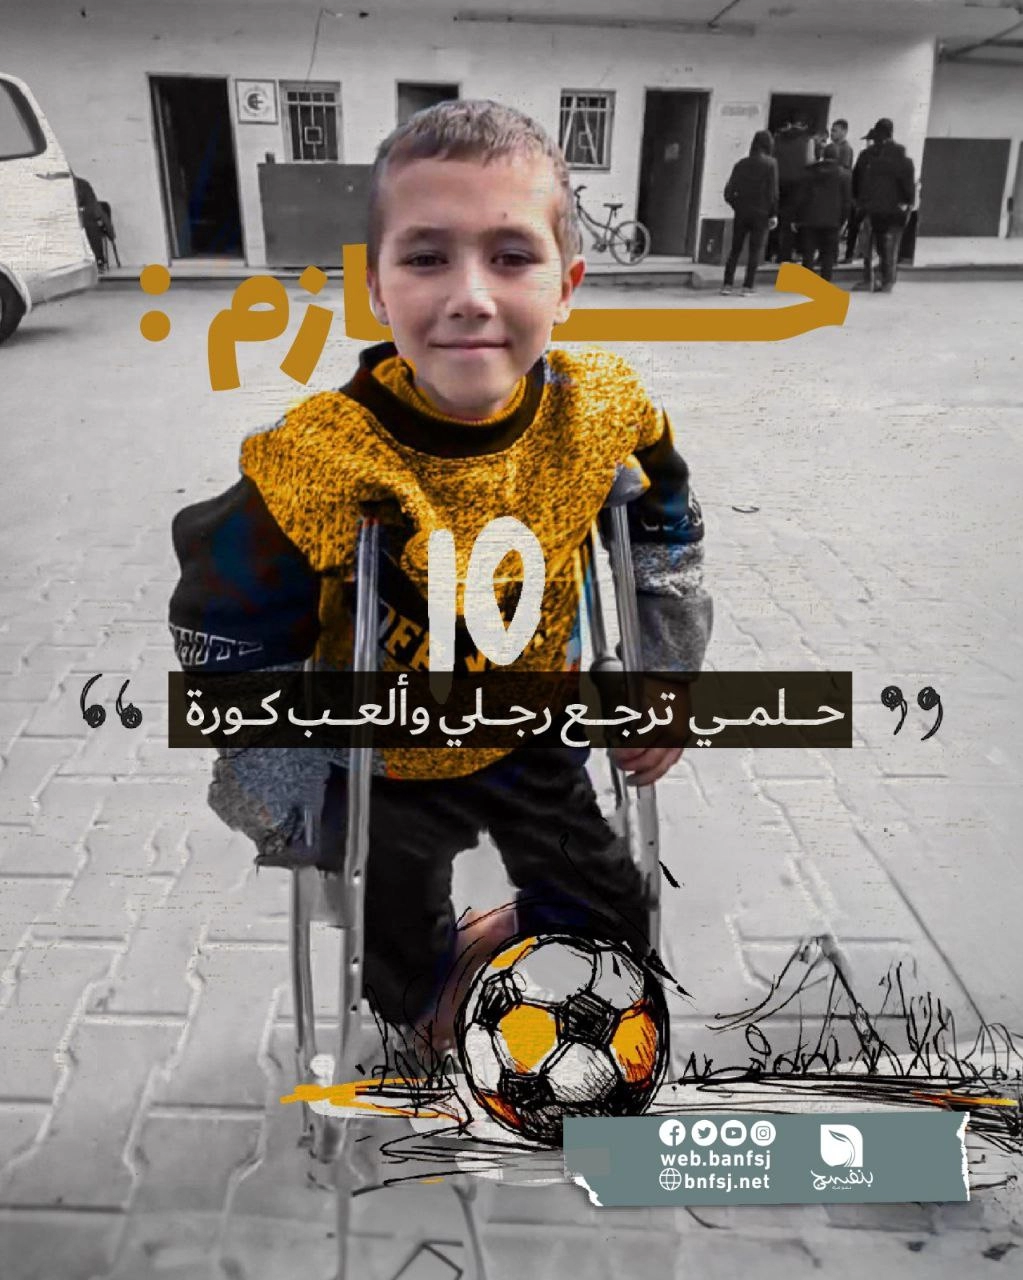 الطفل حازم من غزة يتمنى أن تعةد قدمه ليرجع يلعب كرة القدم.jpg